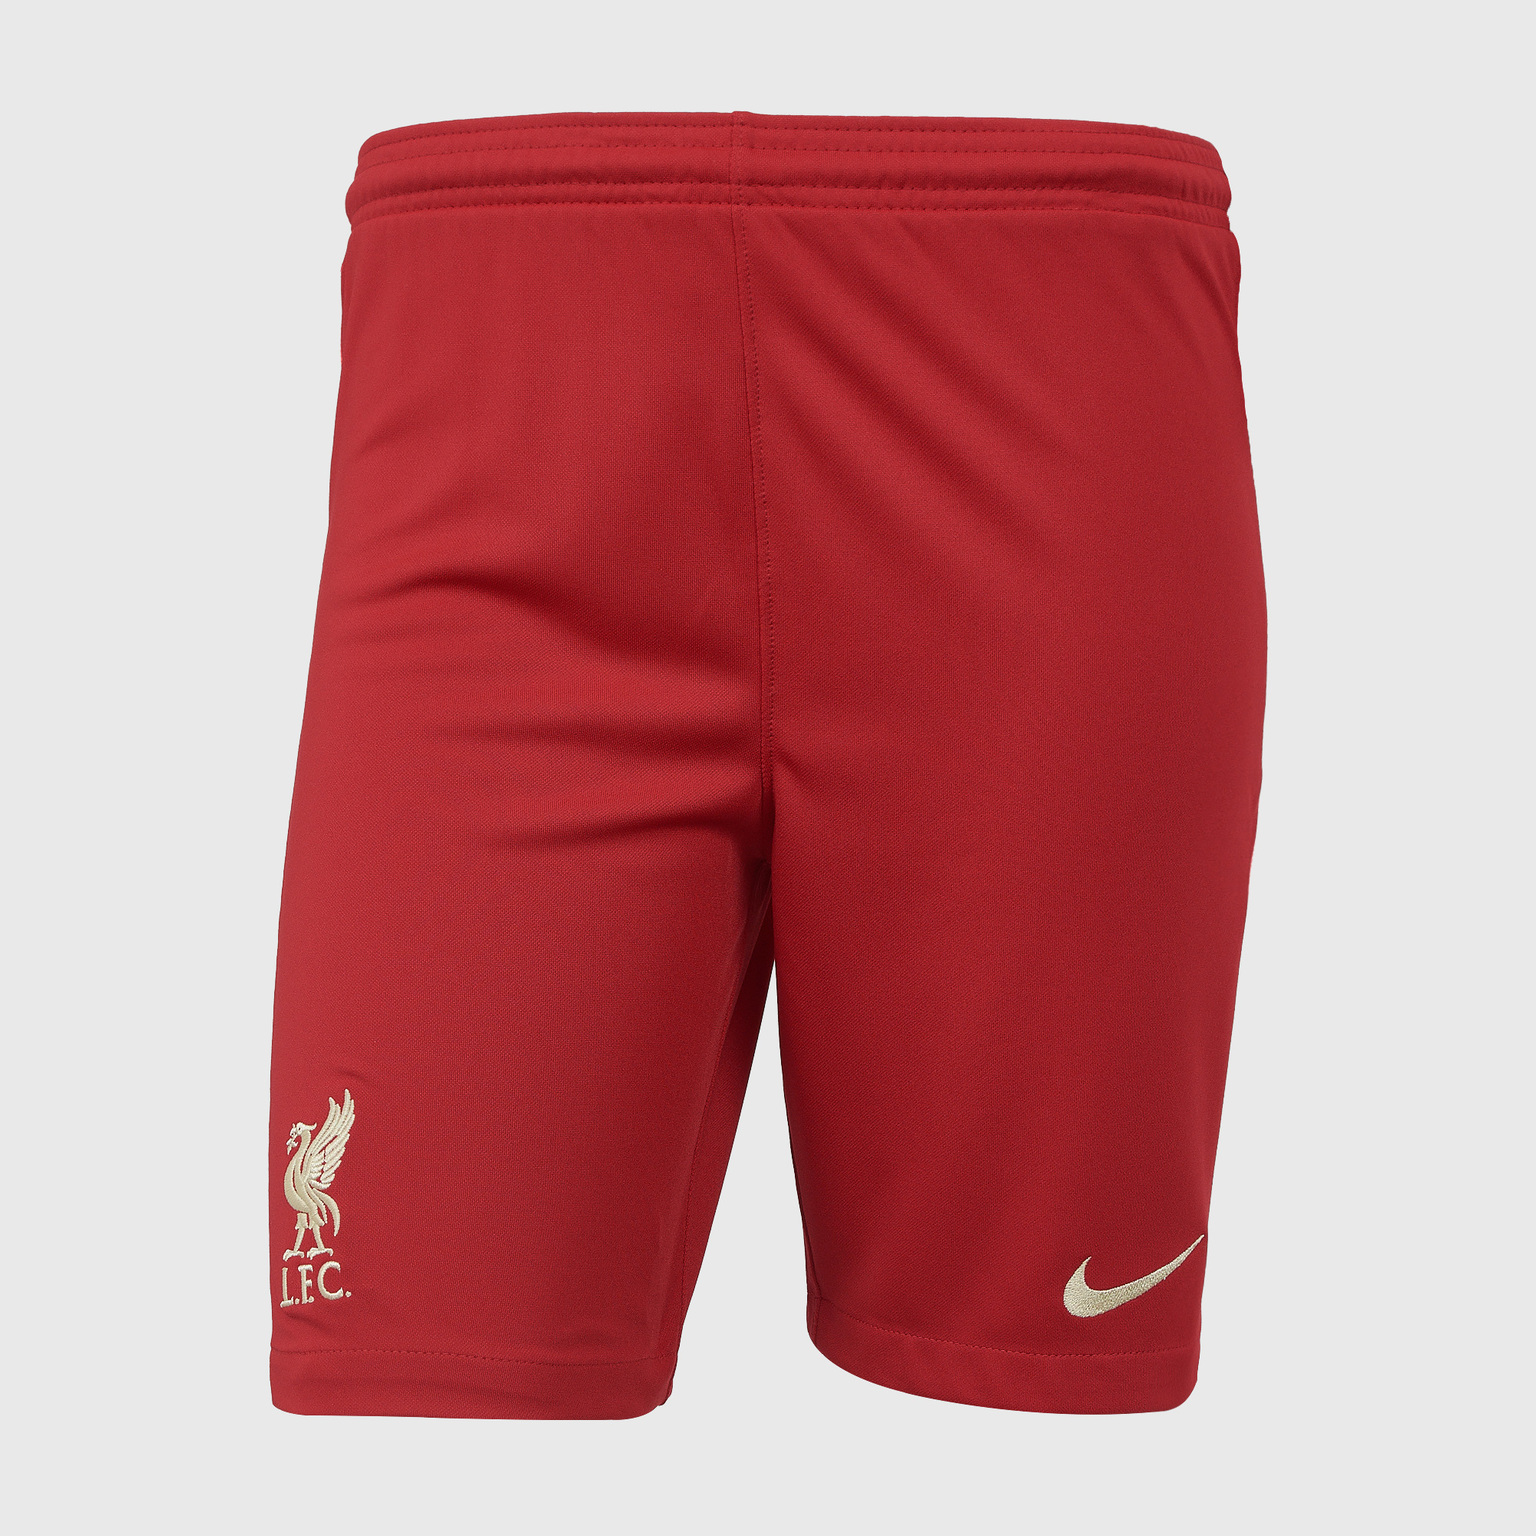 Шорты домашние подростковые Nike Liverpool сезон 2021/22